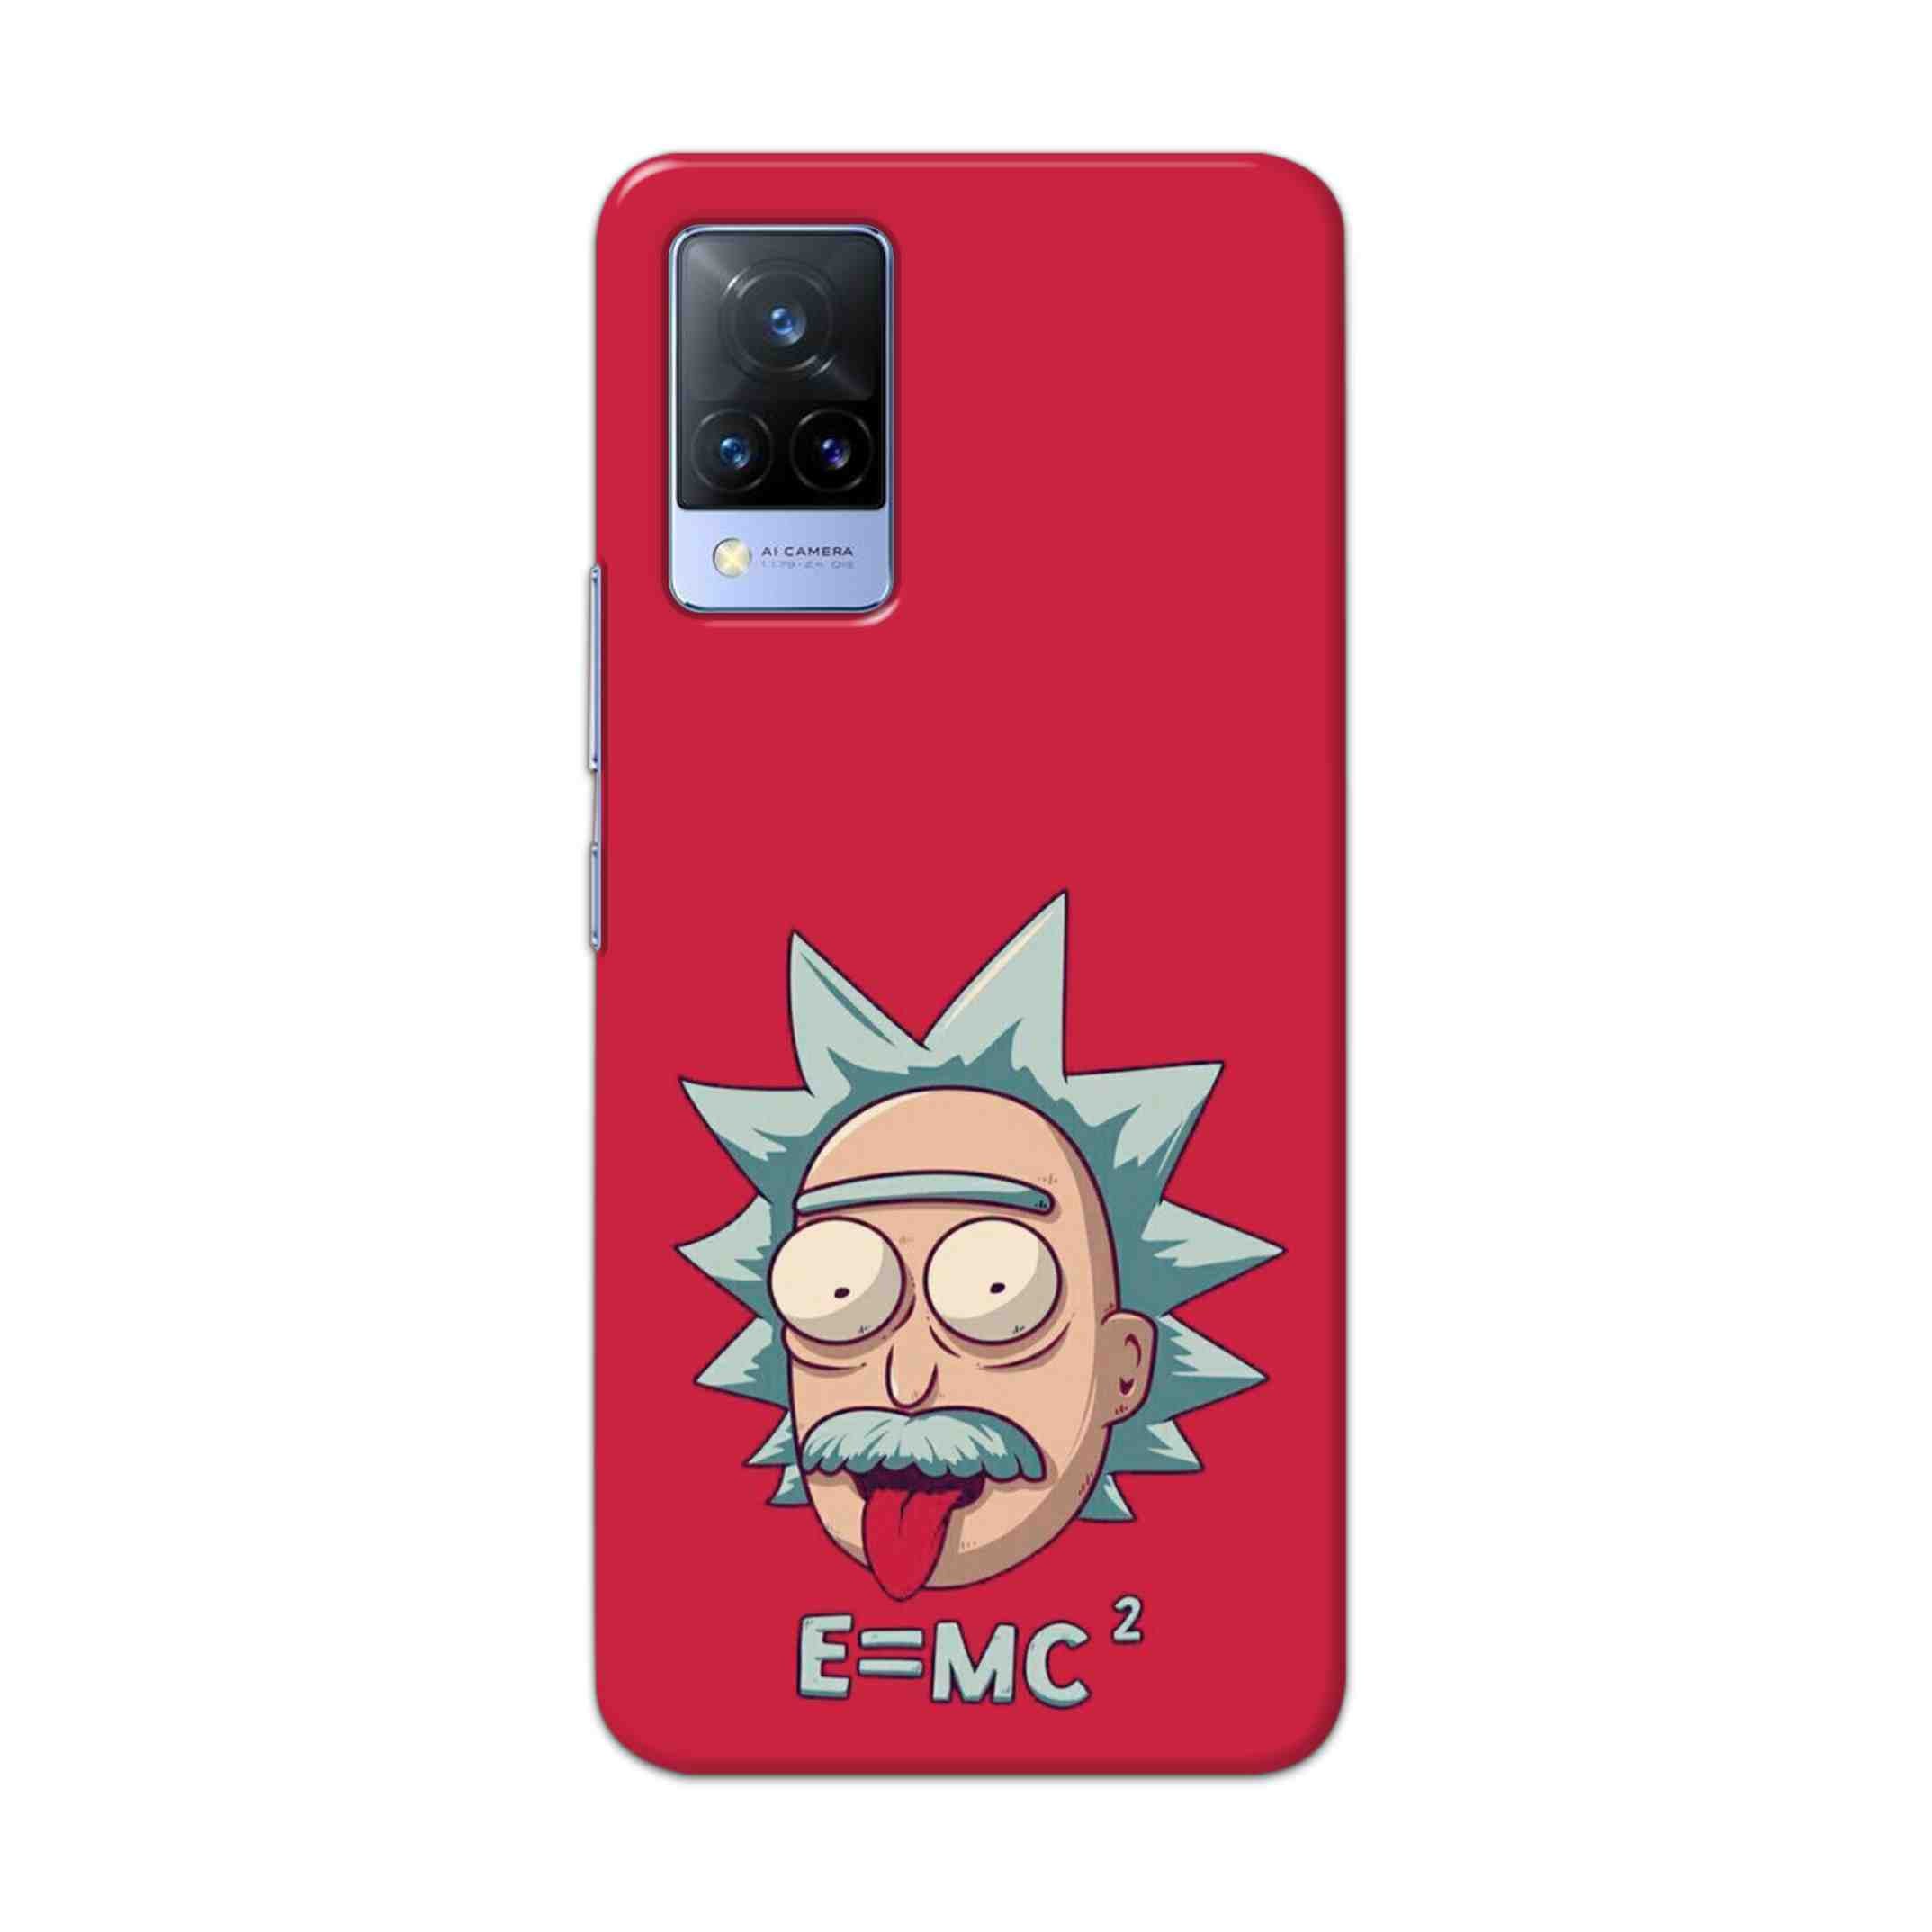 Buy E=Mc Hard Back Mobile Phone Case Cover For Vivo V21 Online